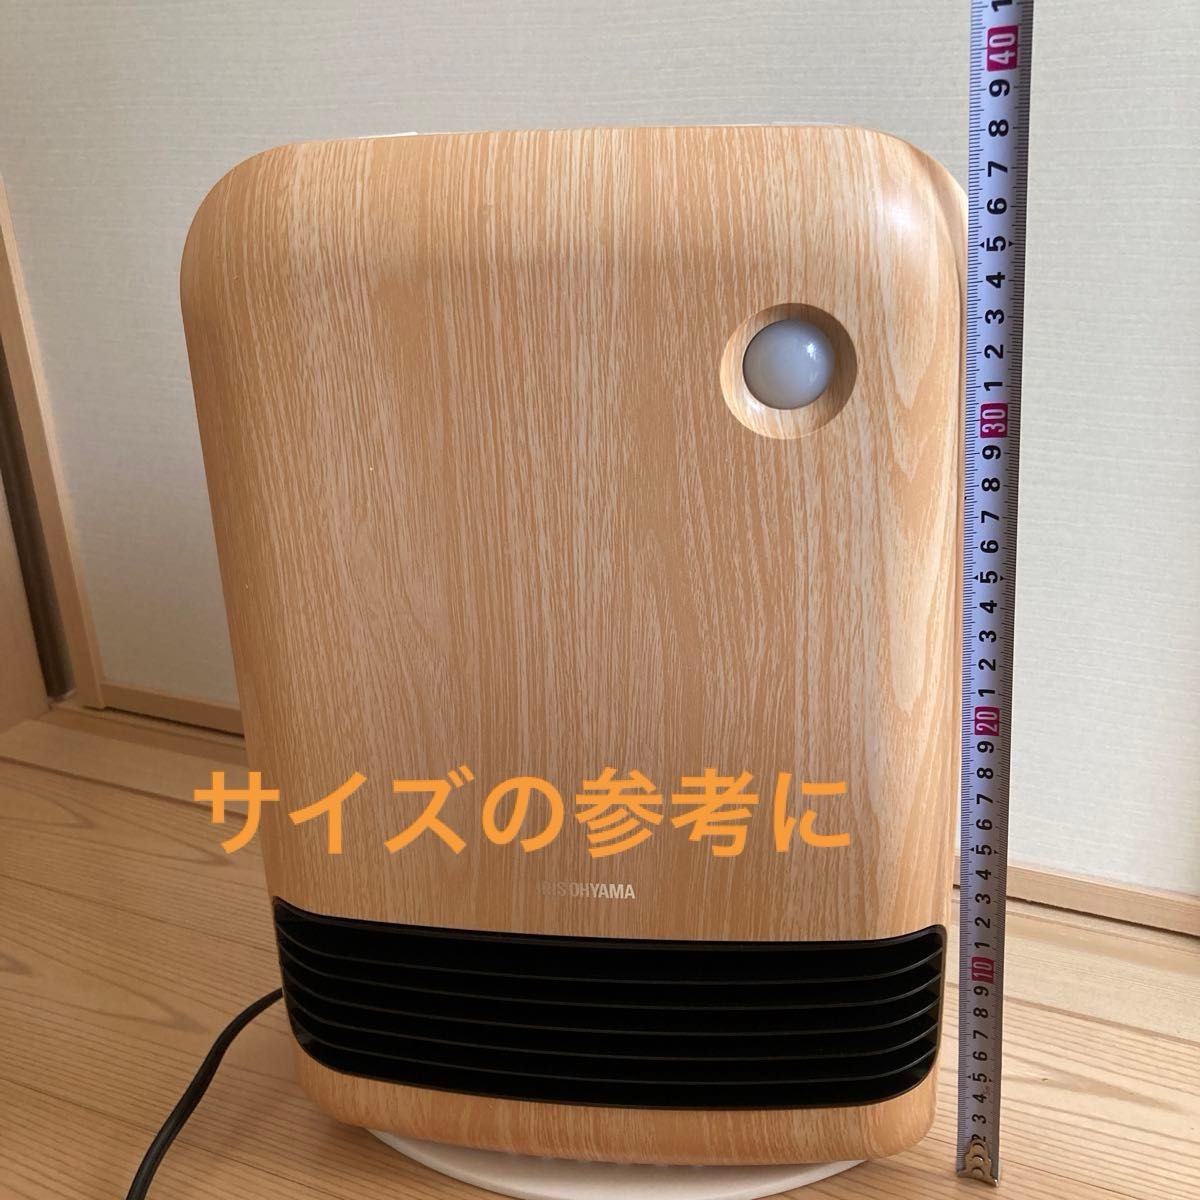 【暖房器具】人感センサー付 大風量 セラミックファンヒーター 薄木目  型番:KJCHM-12TD3